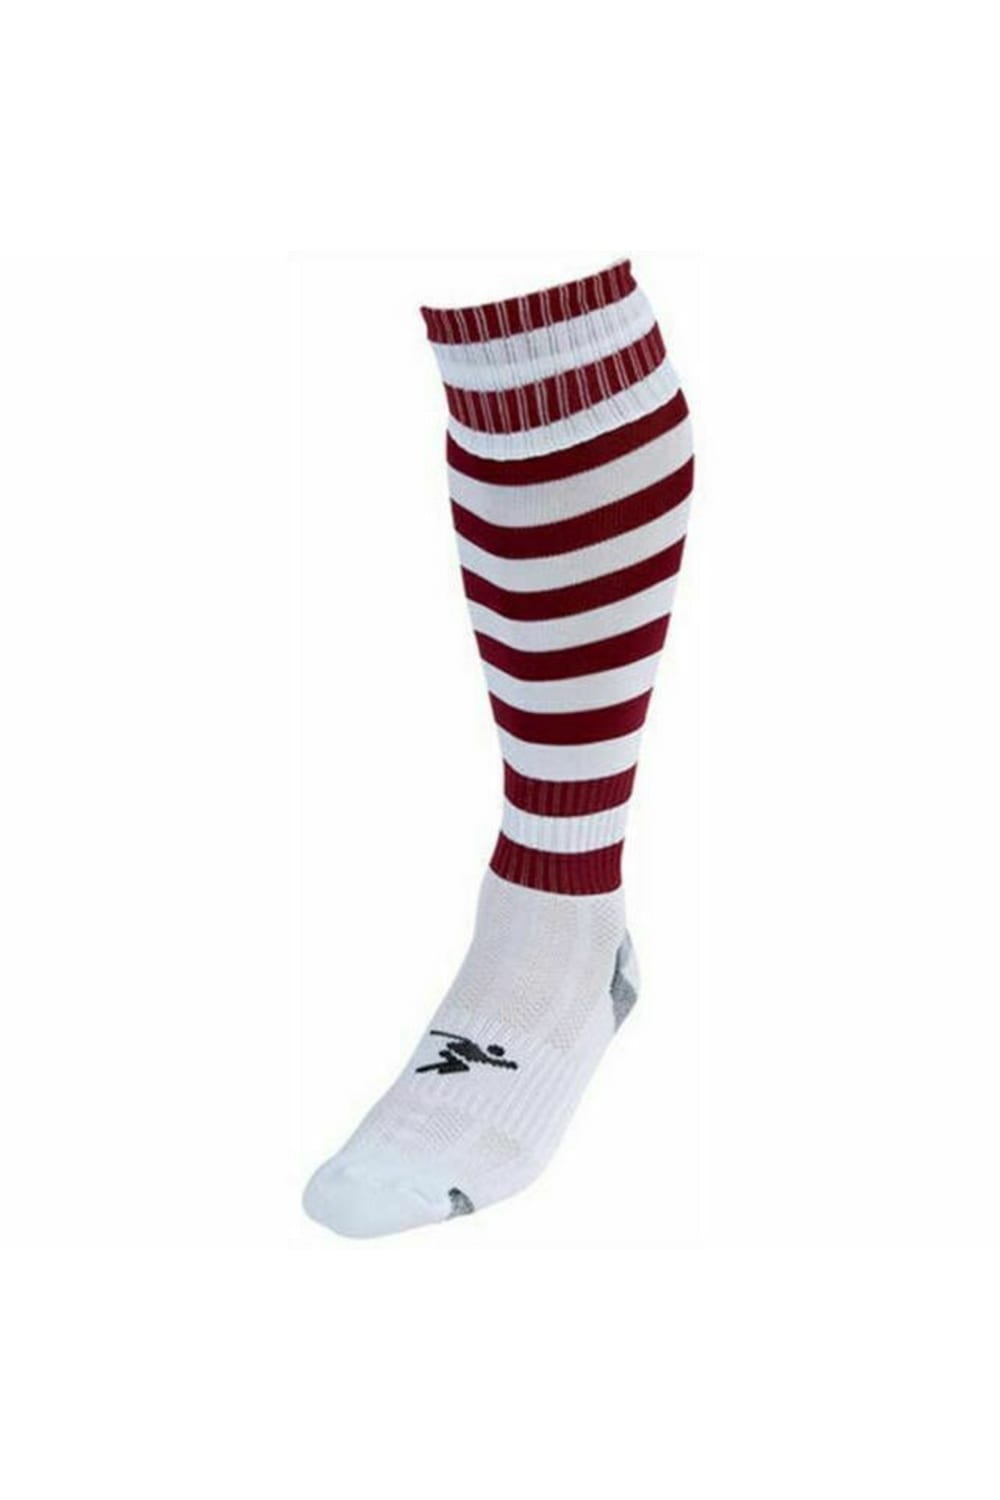 Precision Unisex Adult Pro Hooped Football Socks (White/Maroon)